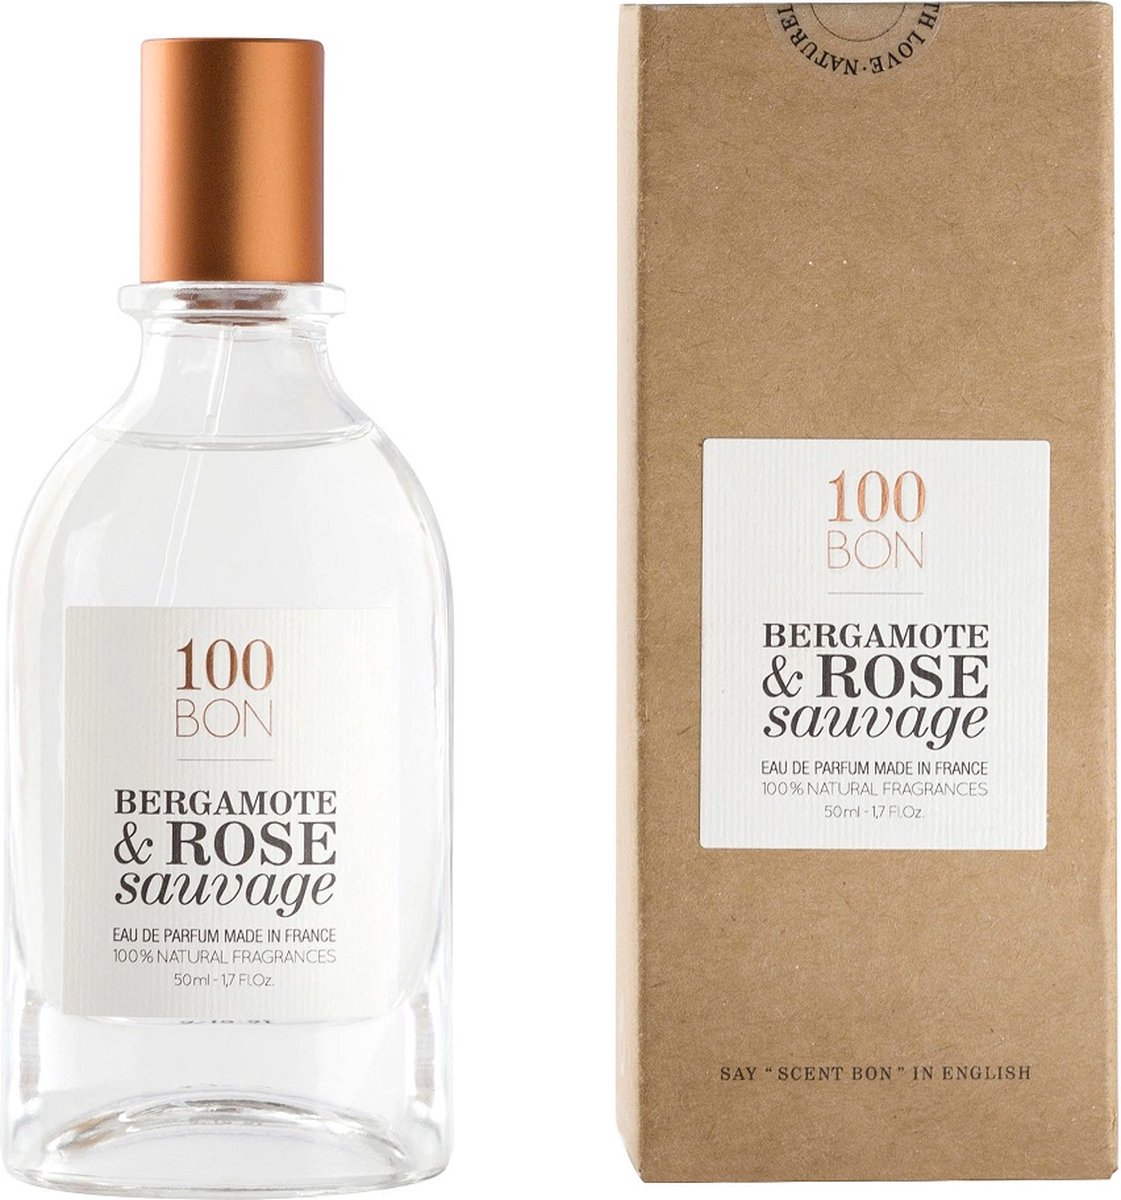 100 Bon Bergamote & Rose Sauvage Eau de Parfum 50ml